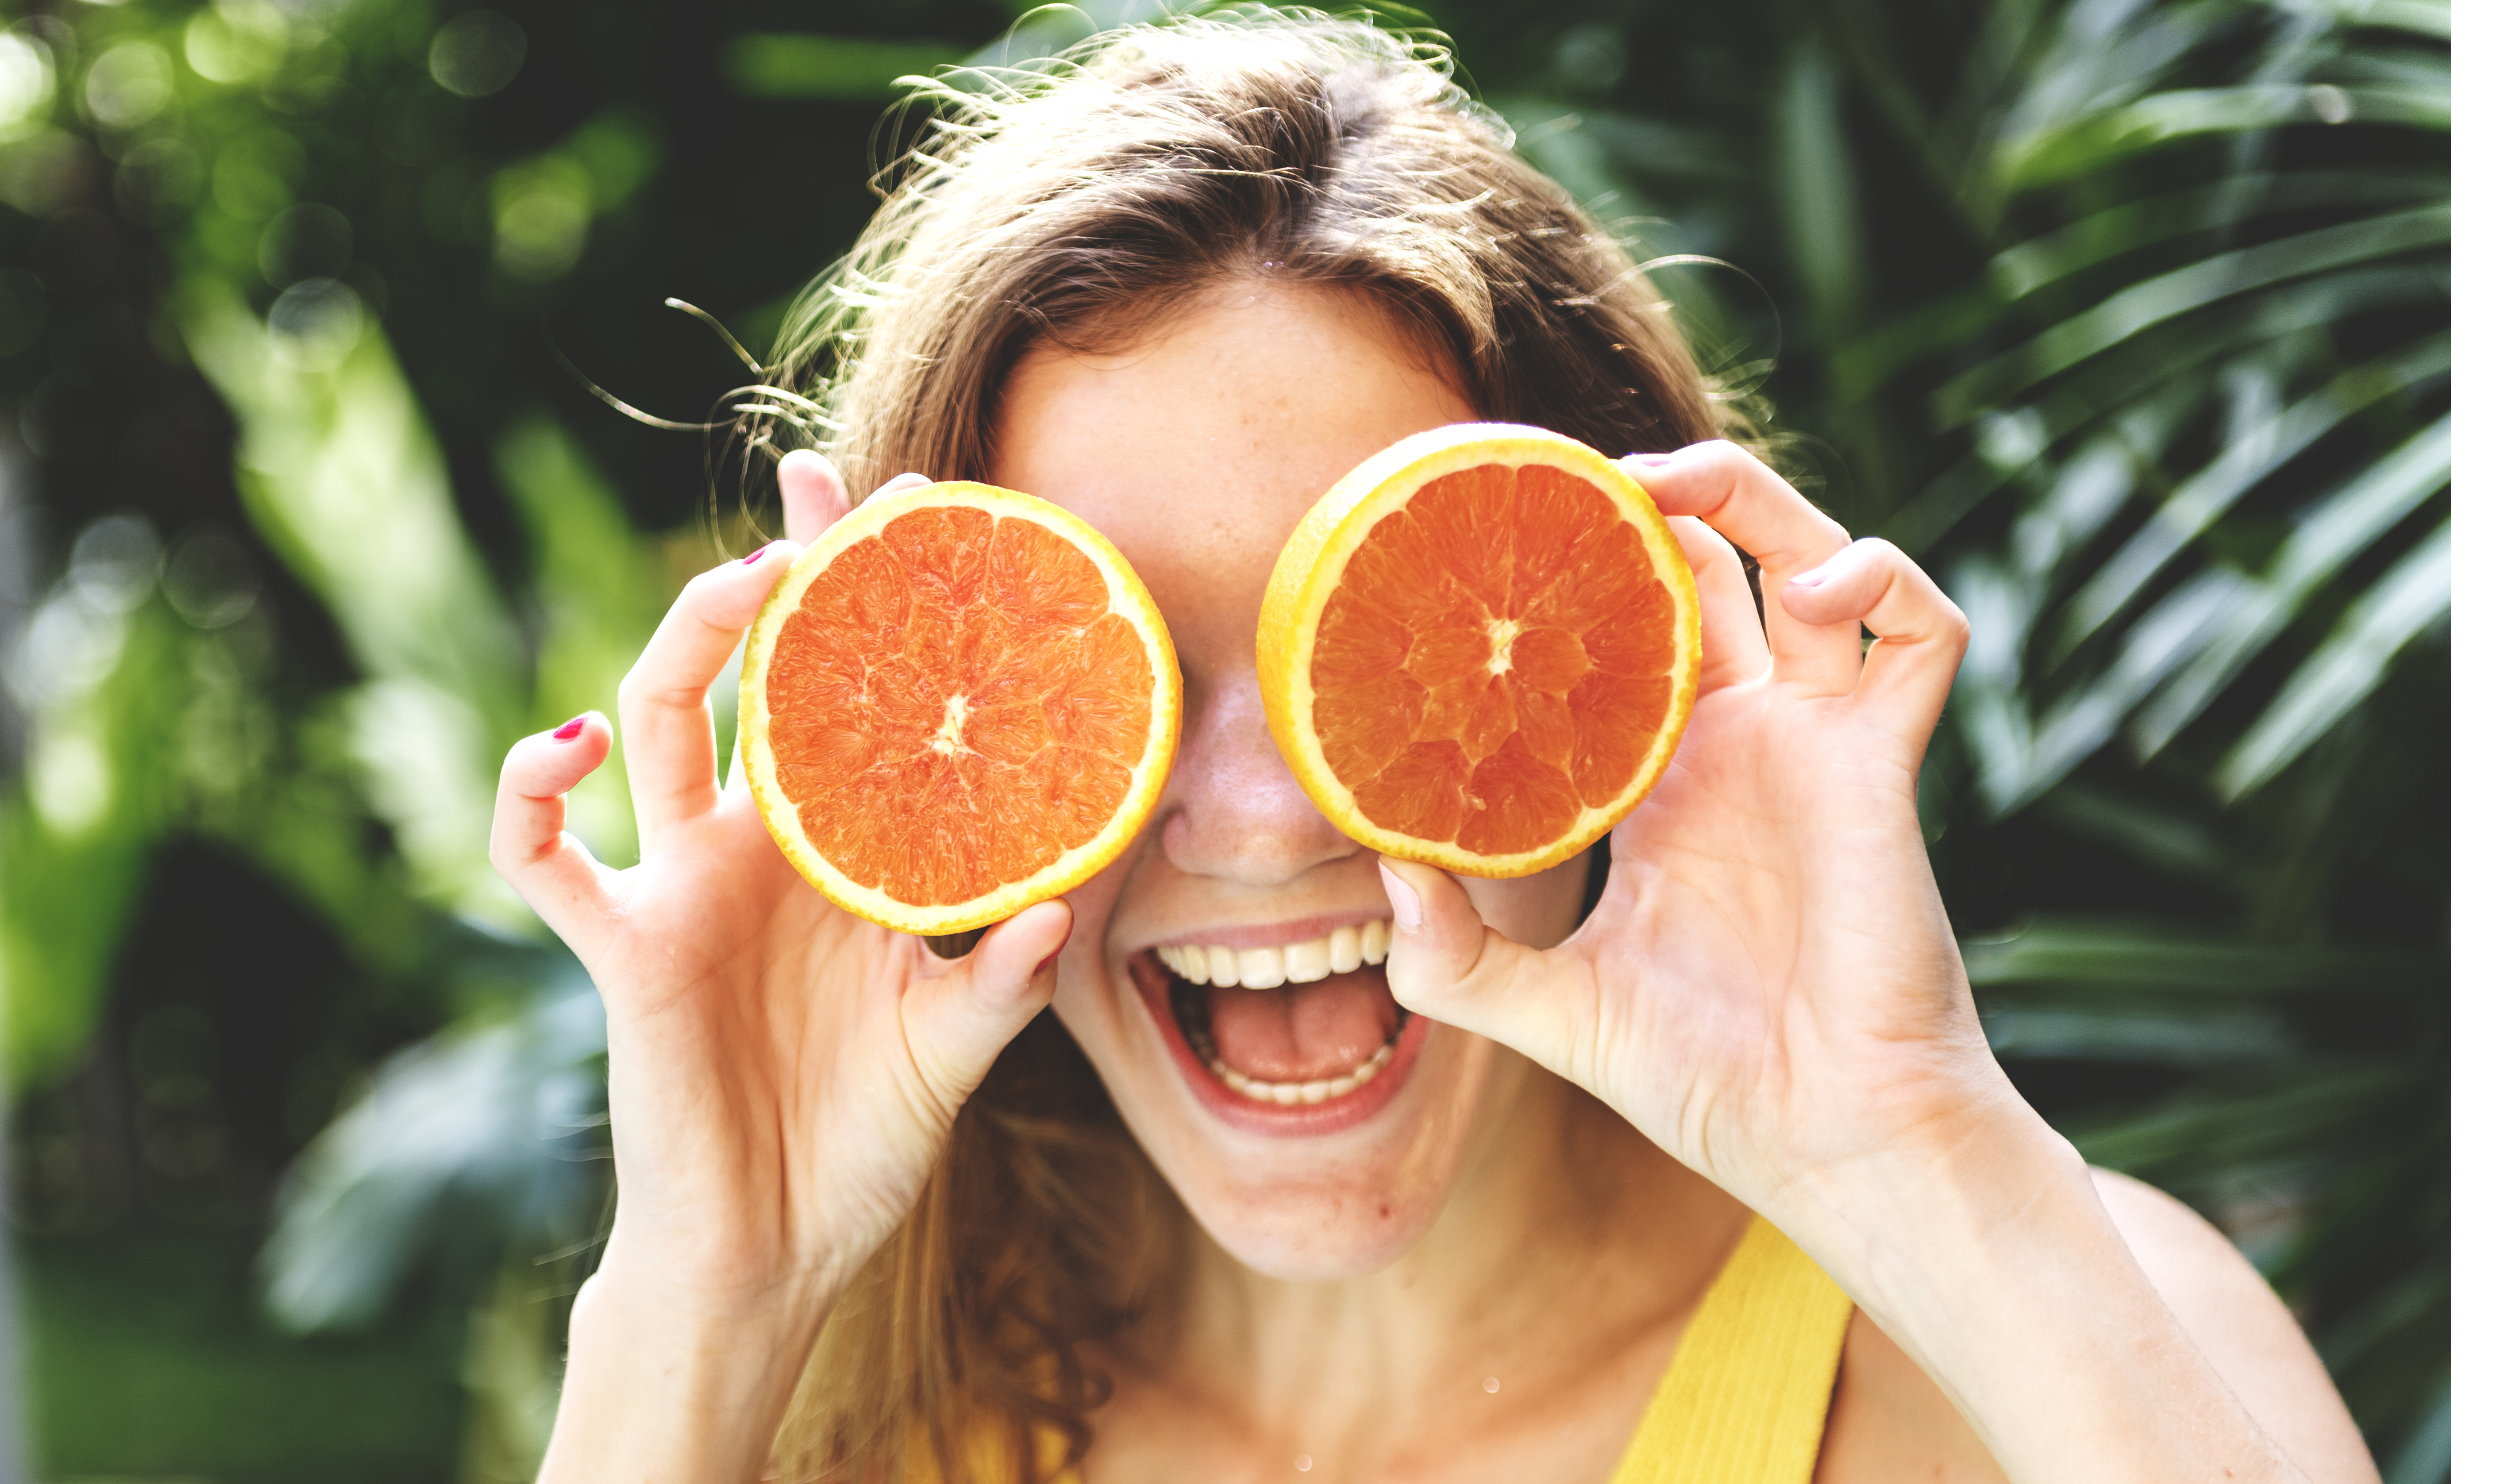 She likes oranges. Апельсины с эмоциями. Апельсины на счастье. Девушка с цитрусами. Апельсинку на здоровье.